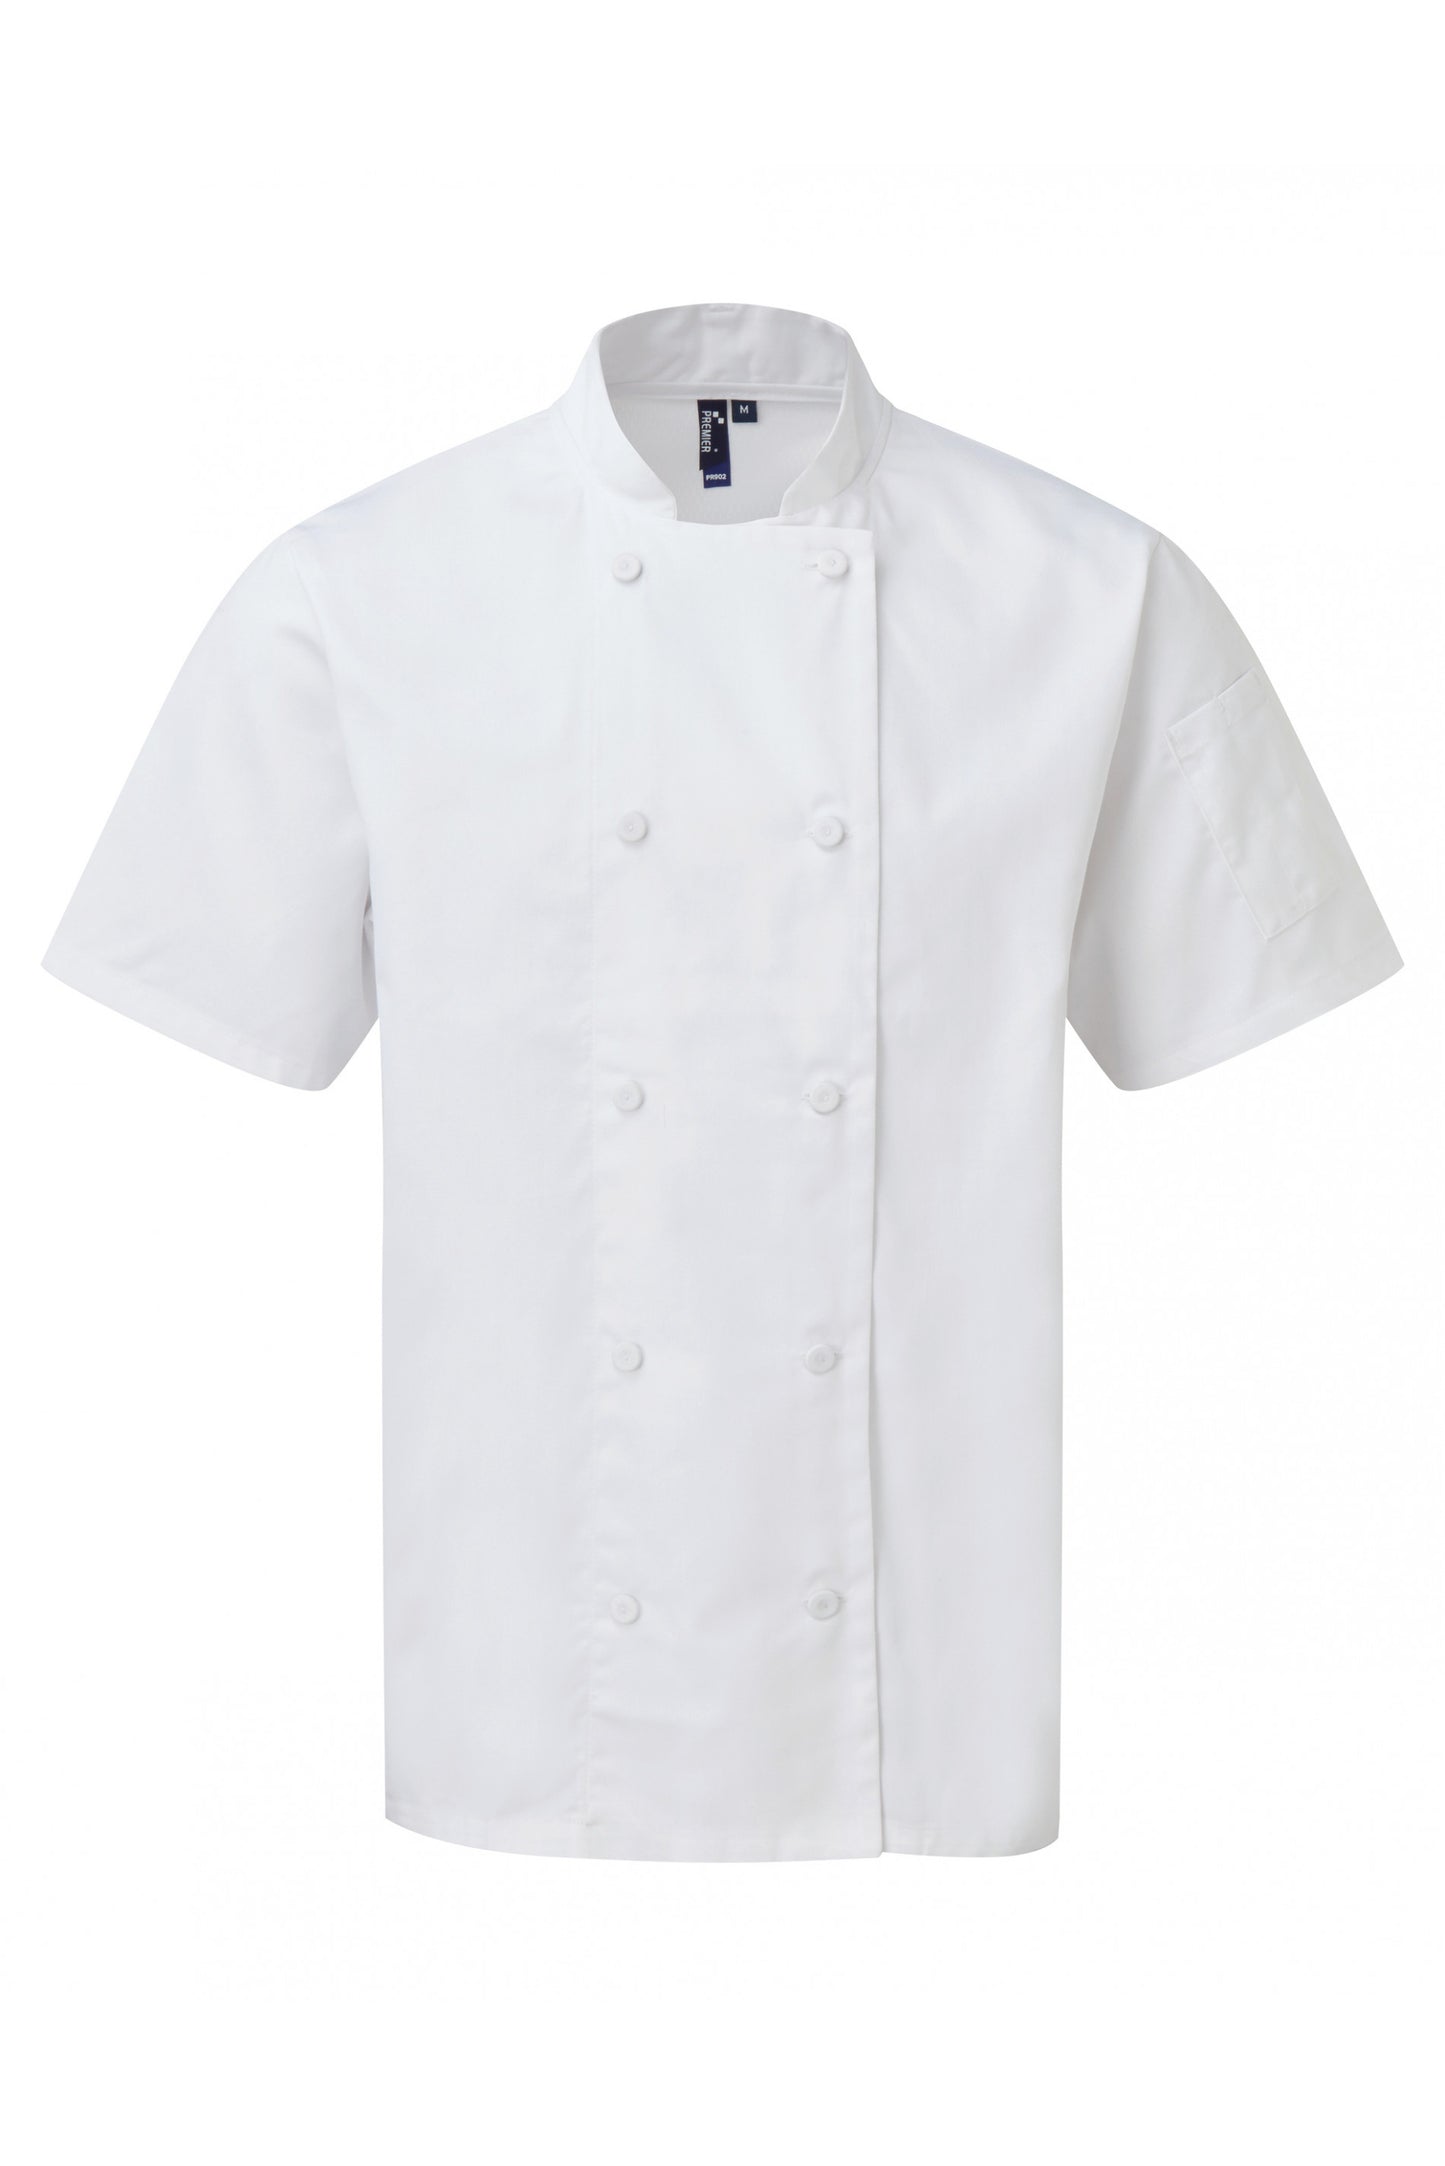 PR902 - Veste chef cuisinier manches courtes Coolchecker®